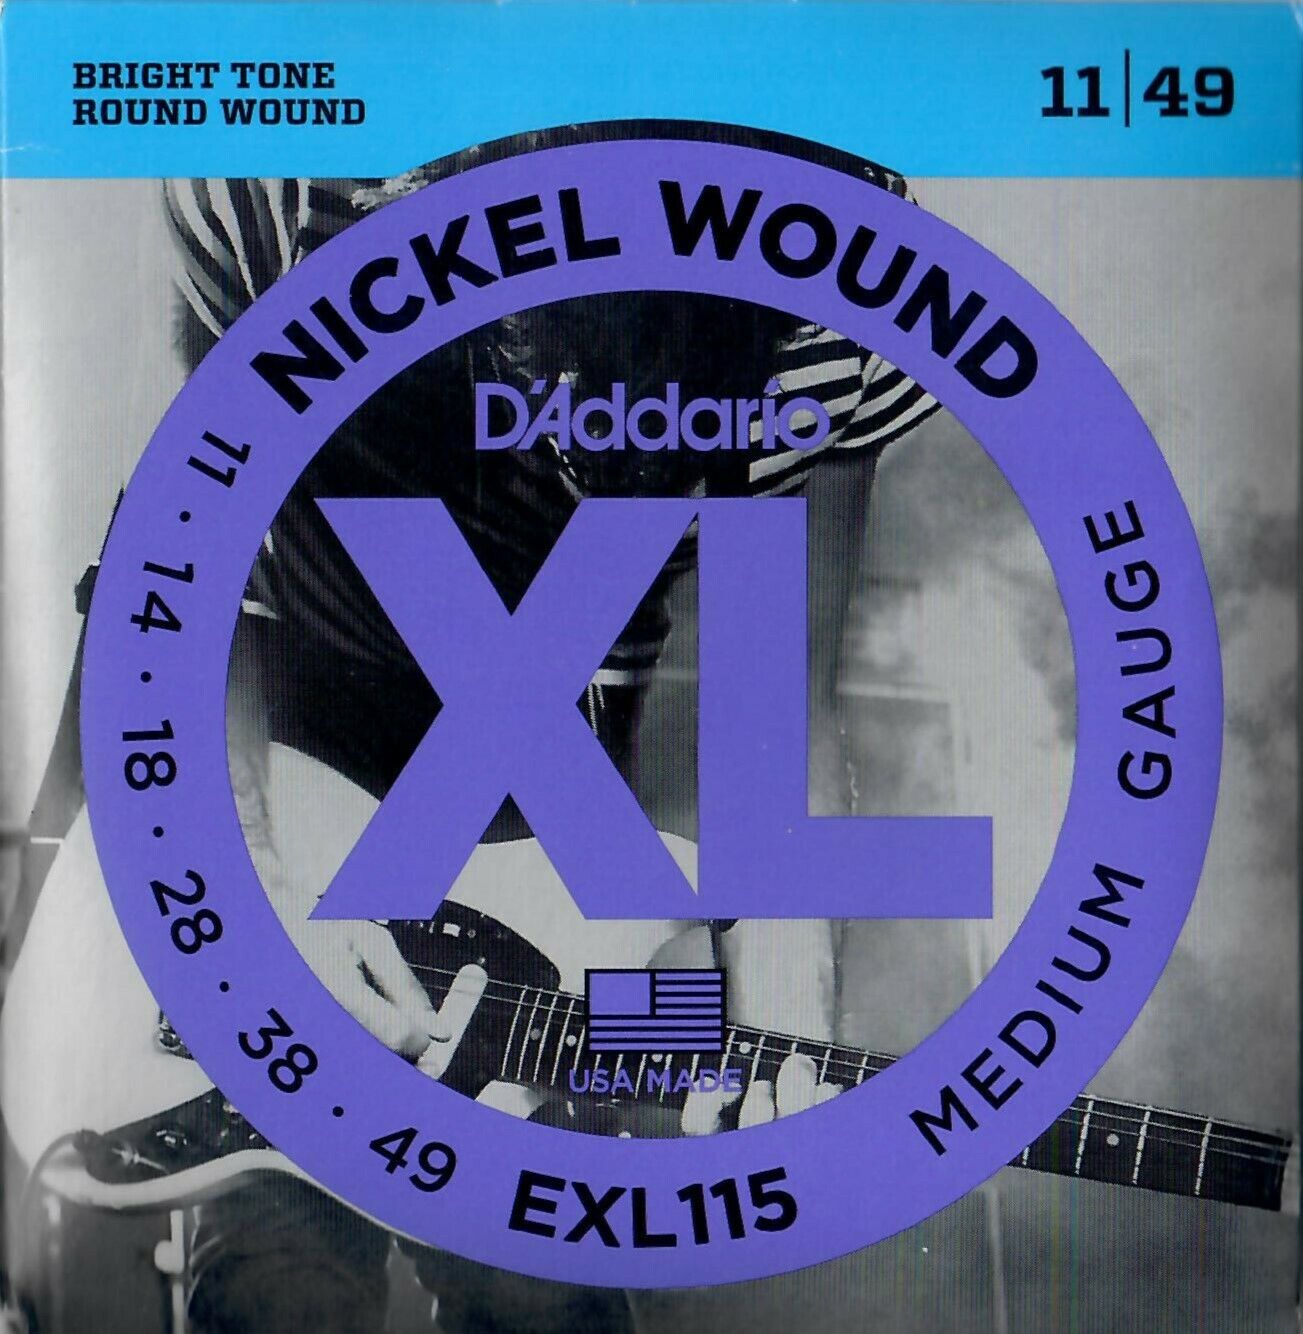 D'addario EXL115 Medium Satz Saiten für E-Gitarre Nickel Wound